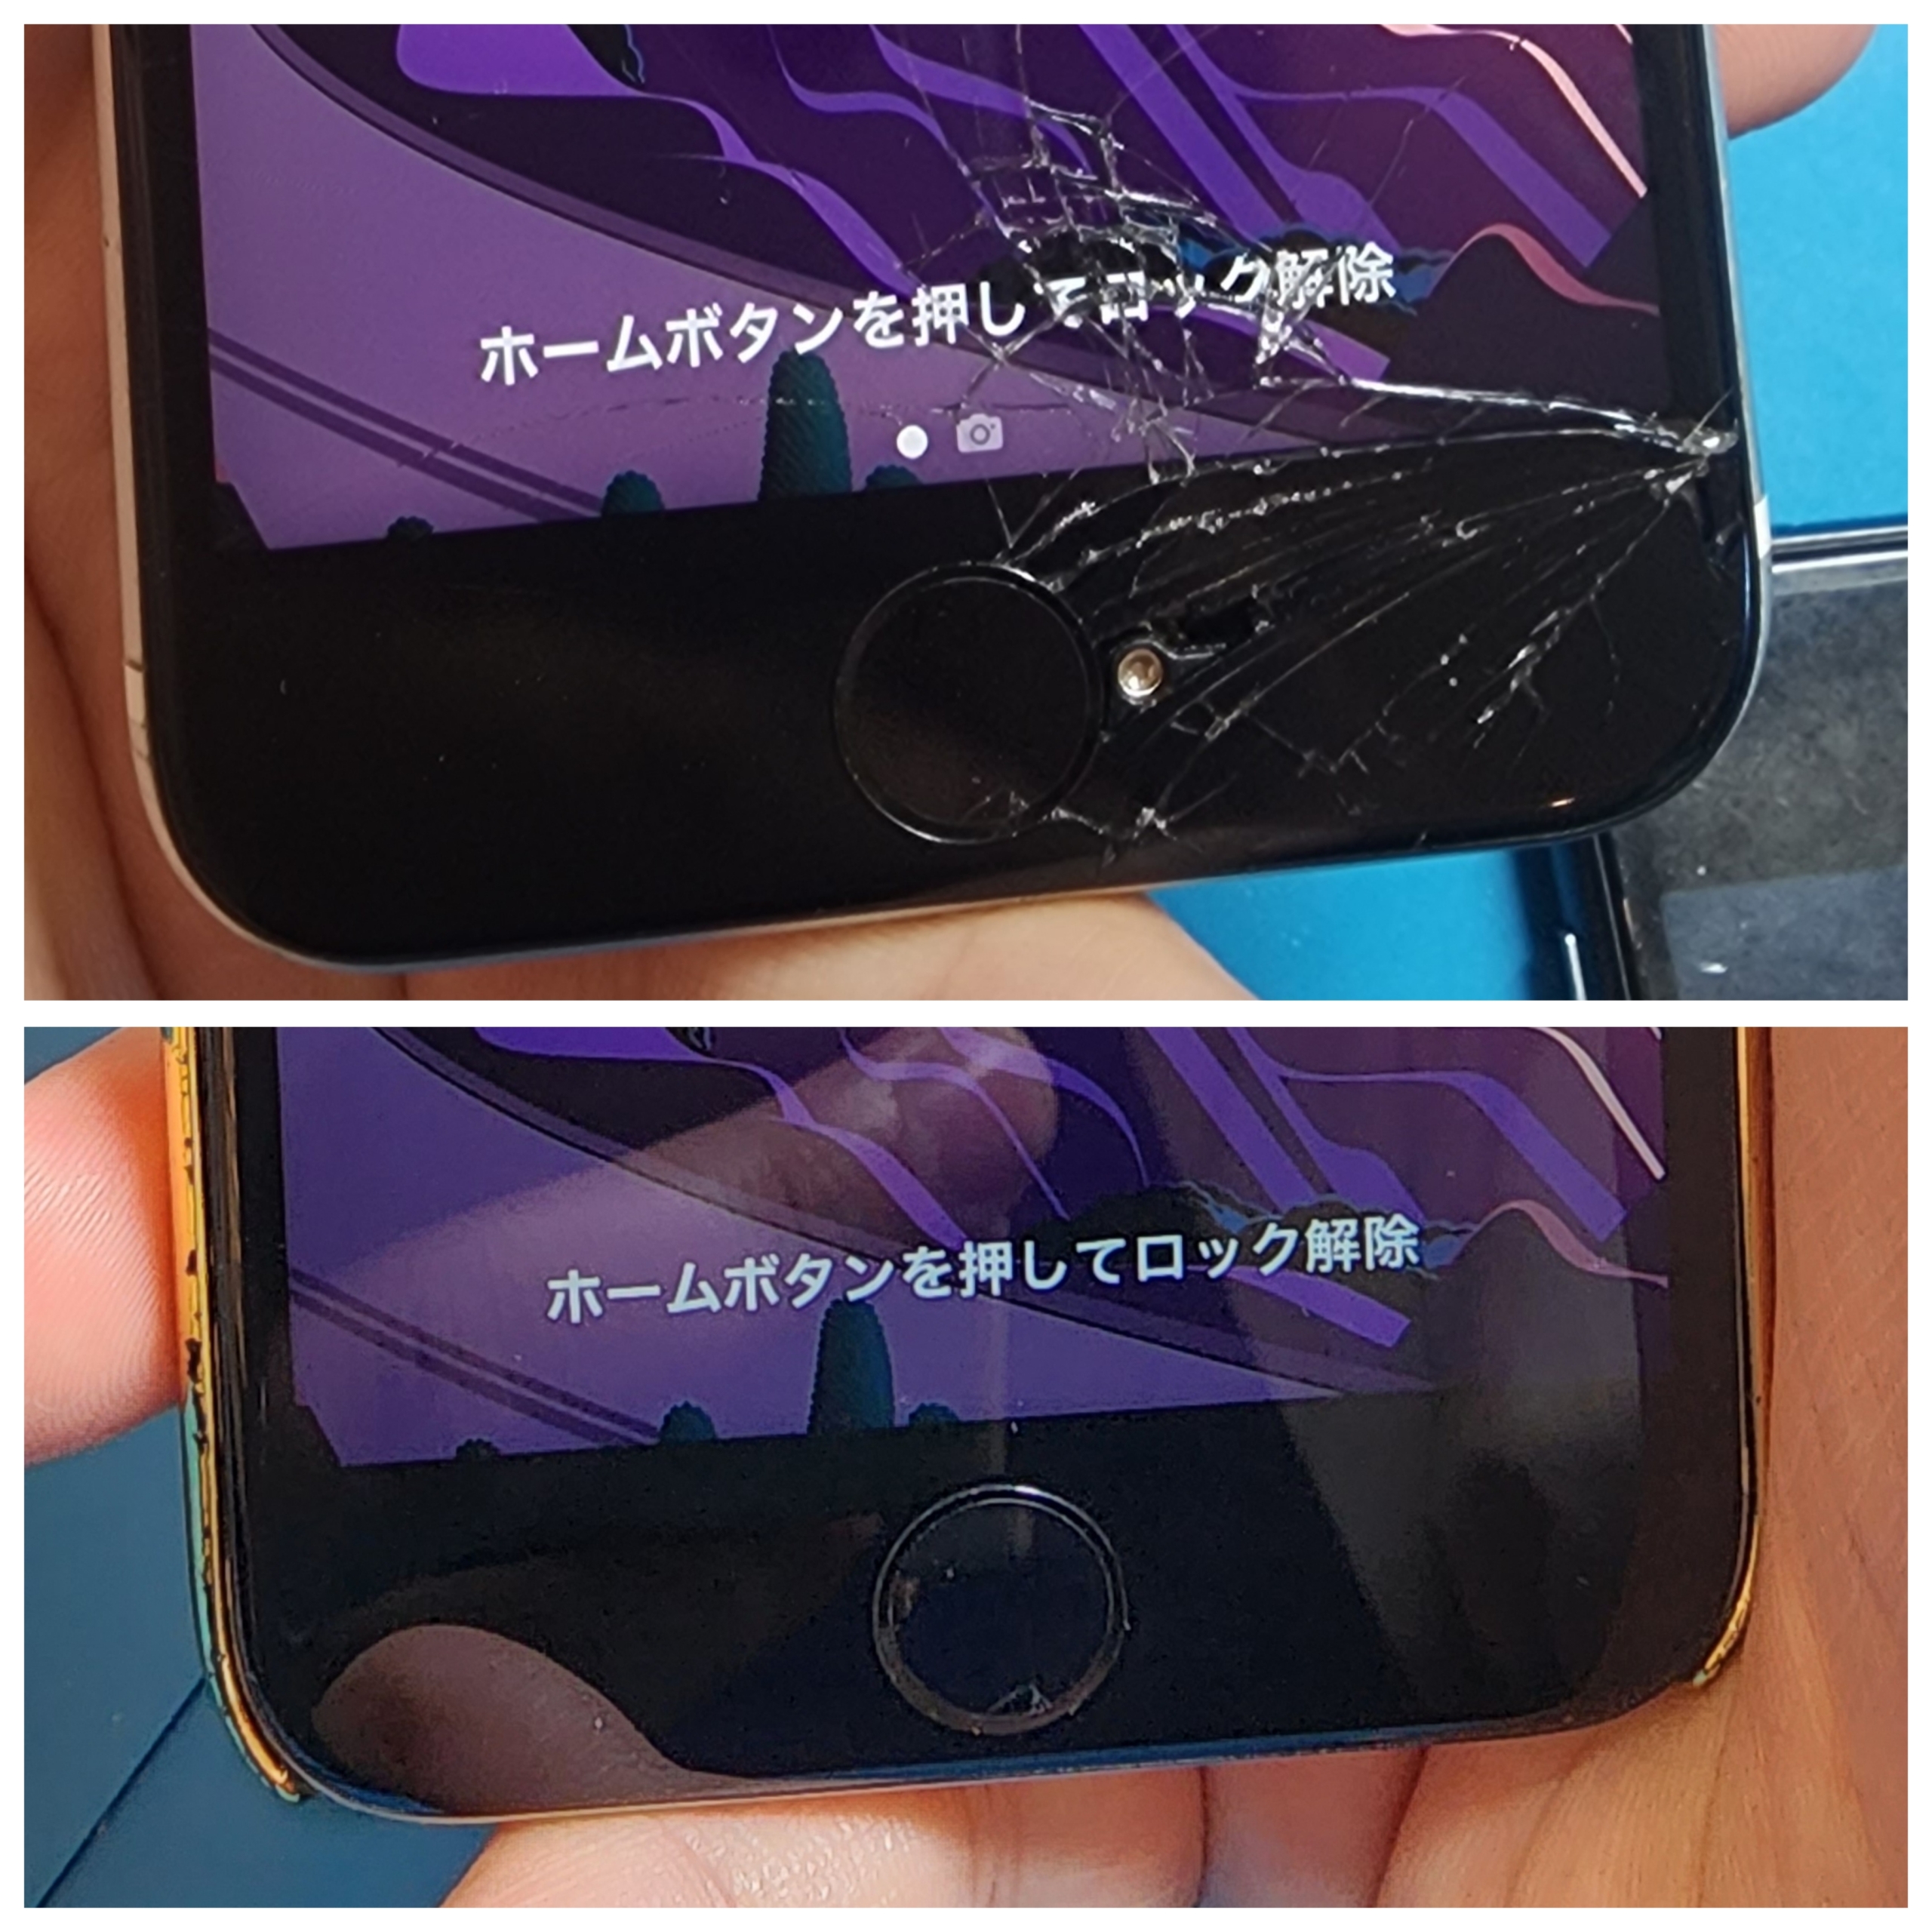 【本日の修理】iPhoneSE2液晶交換